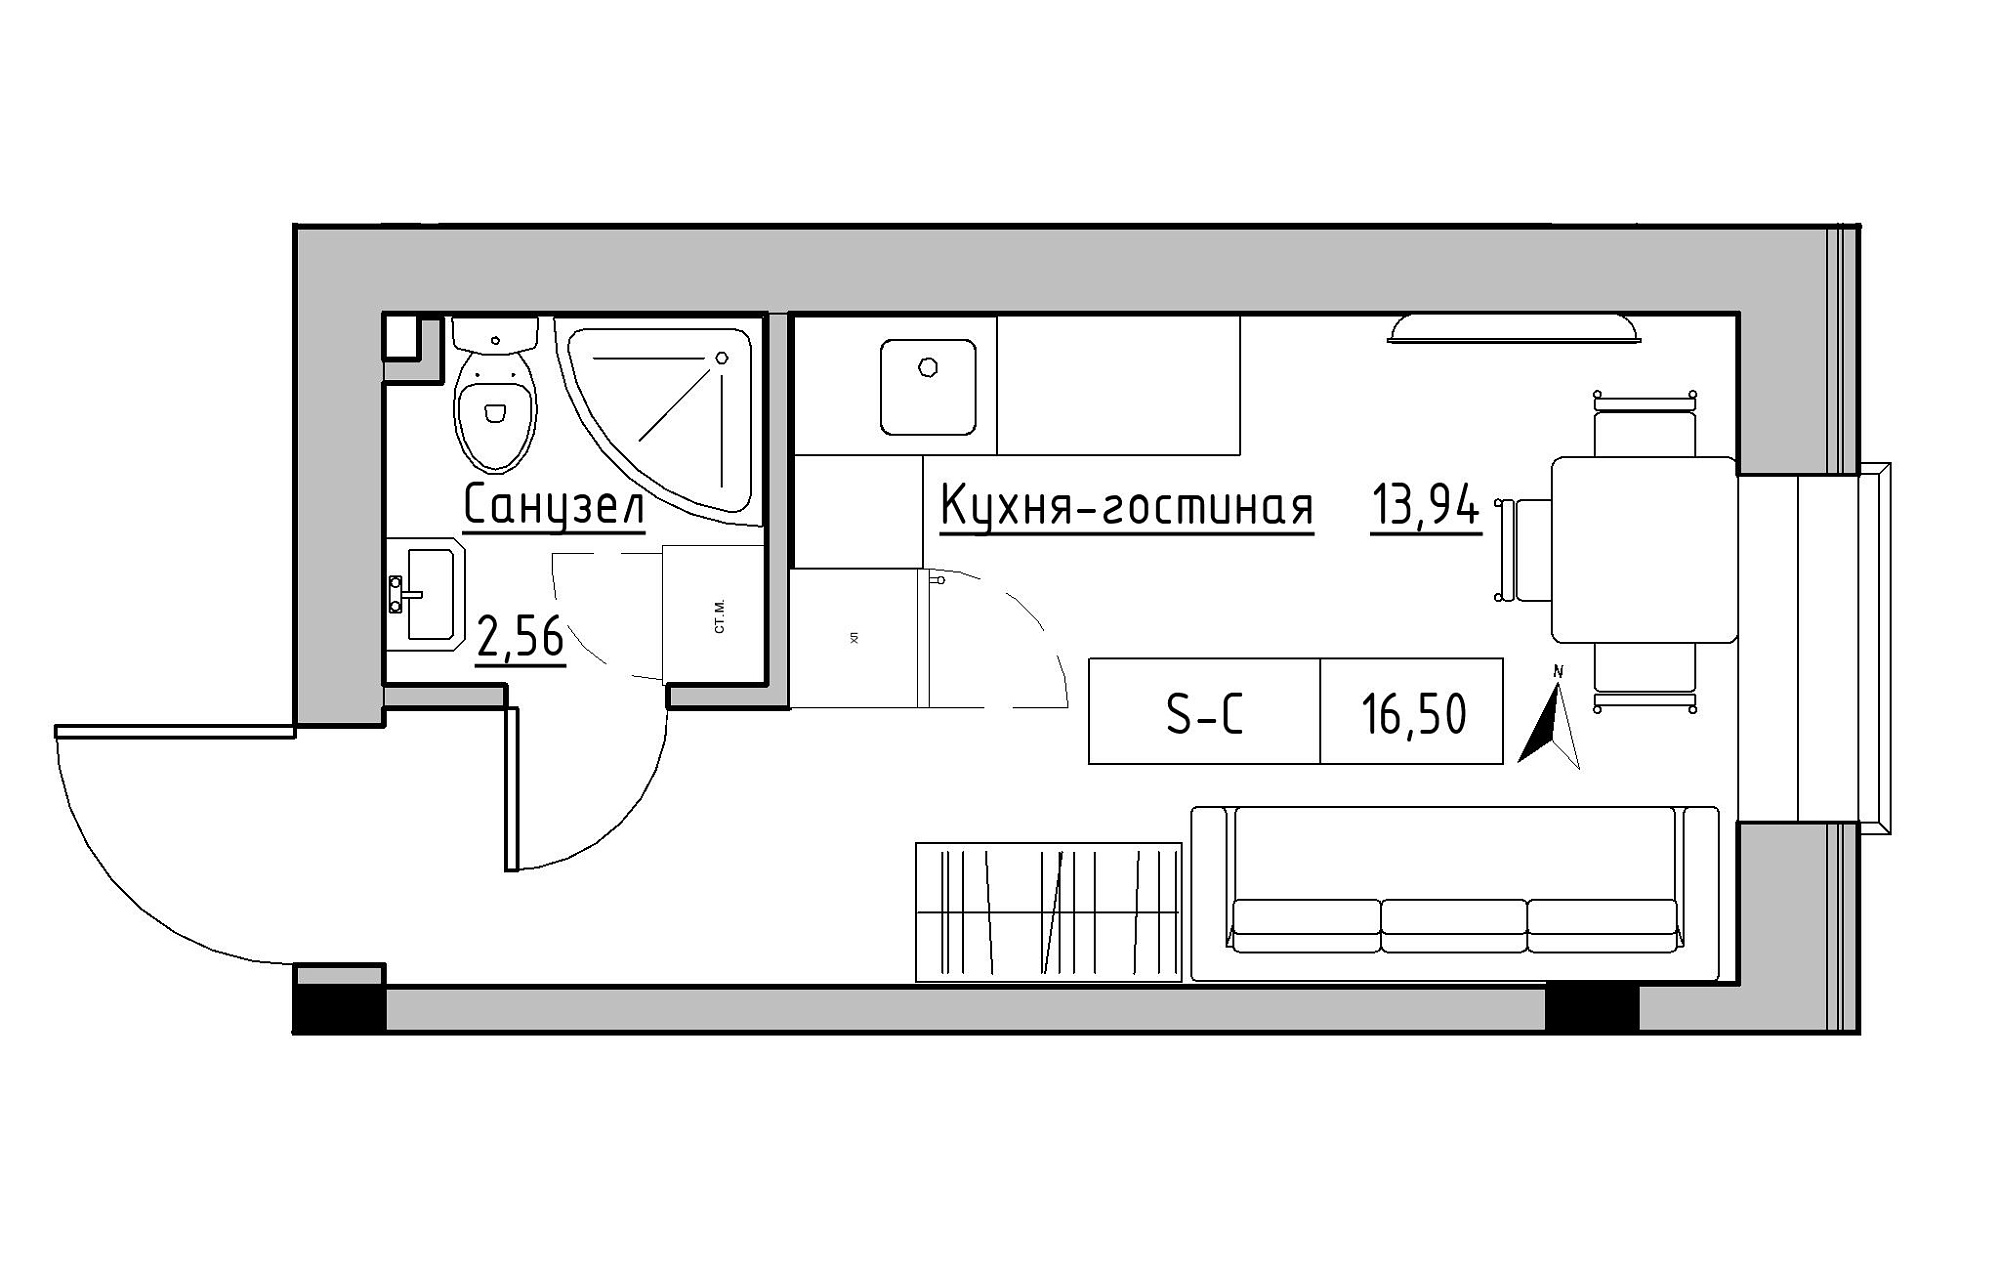 Планування Smart-квартира площею 16.5м2, KS-019-01/0005.